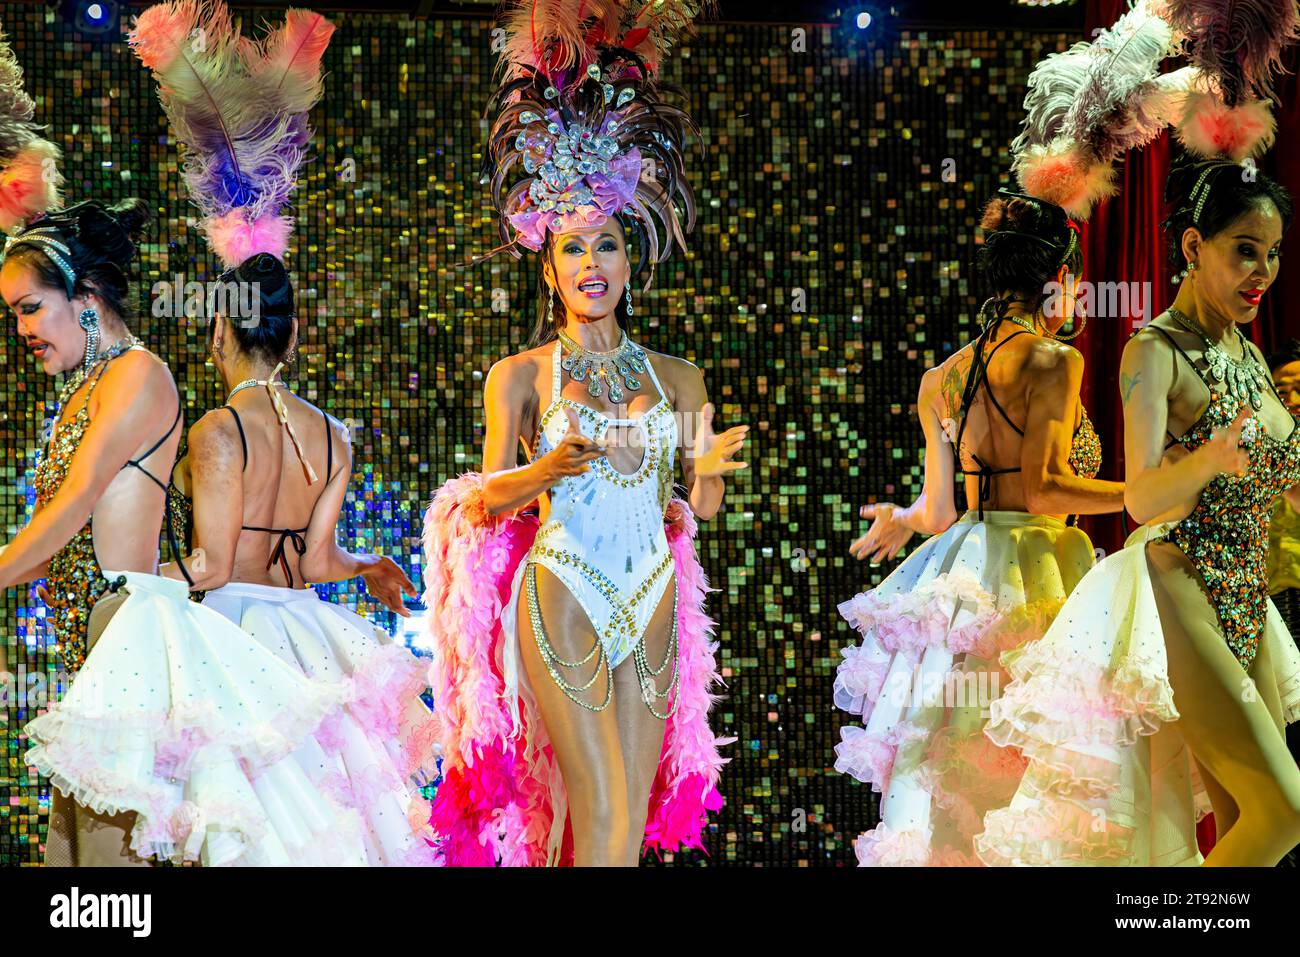 Artistes dansant au Paris Follies Thai ladyboy spectacle de cabaret, Ko Samui, Thaïlande Banque D'Images